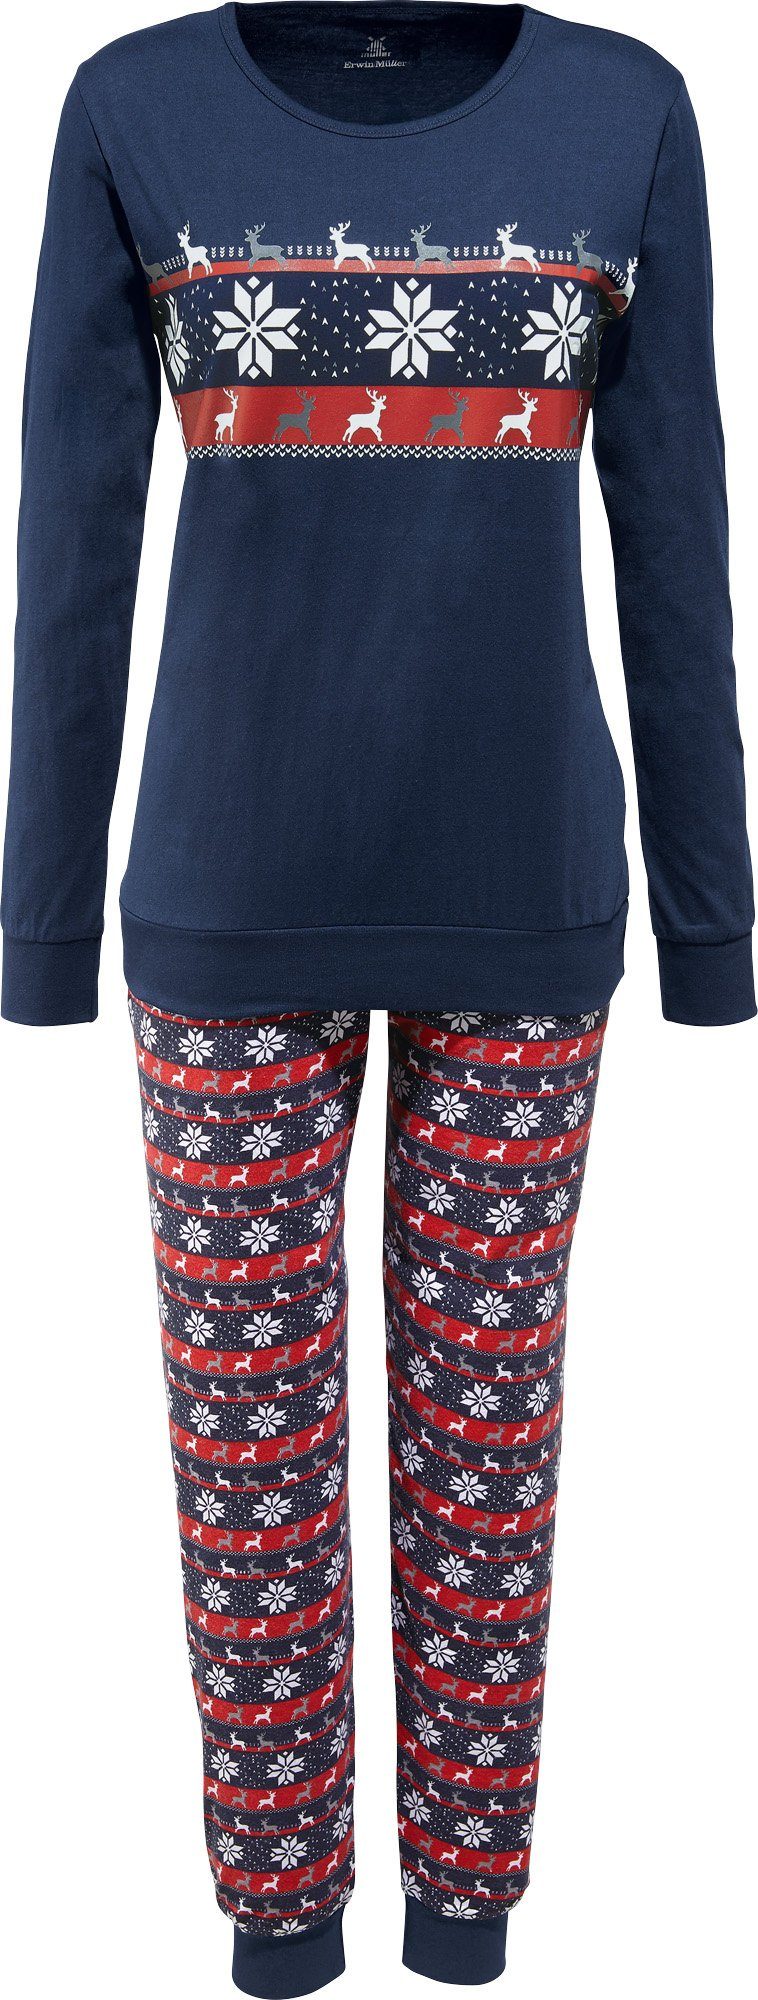 Nachtwäsche Lanceasy Weihnachten Schlafanzug Fun-Nachtwäsche Familie Mama  Papa Kinder Pyjamas Set Weihnachten Grinch Nachtwäsche Nachtwäsche Anzug  blogtesla.fr